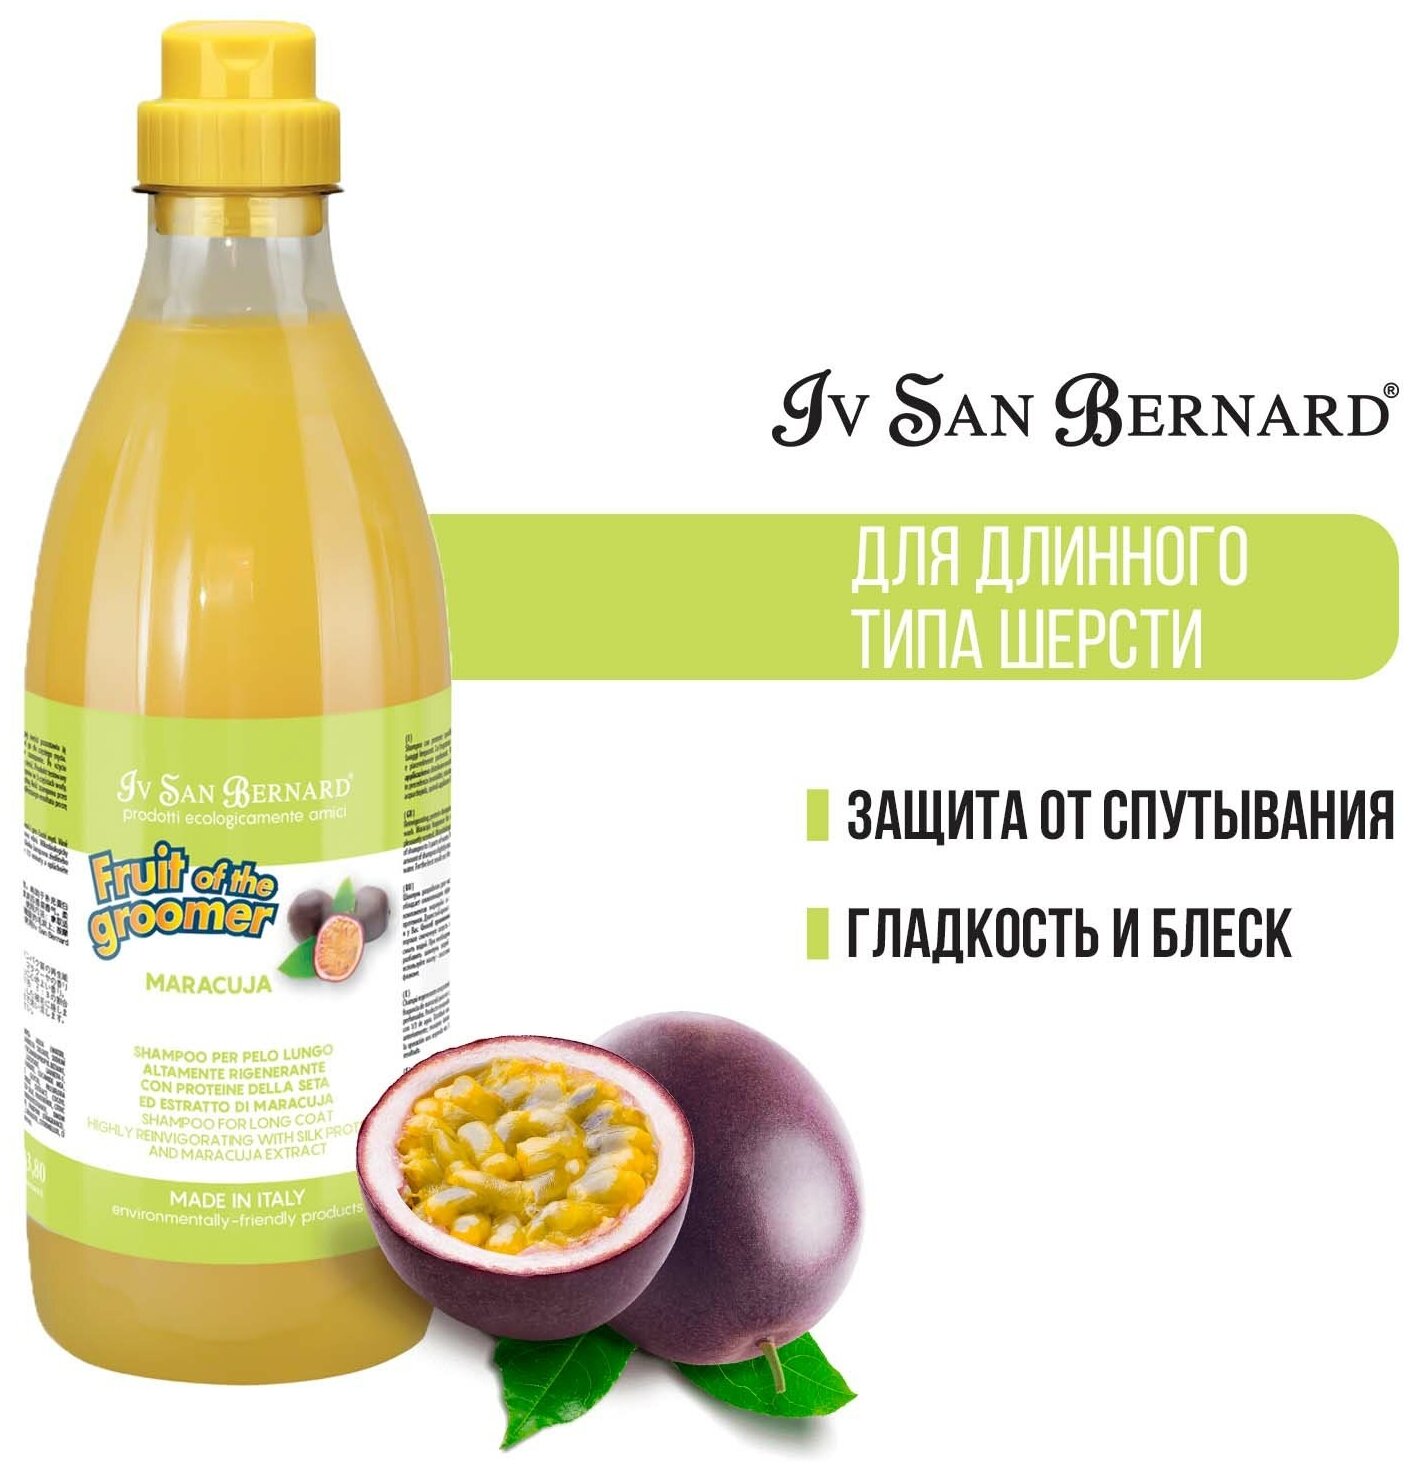 Шампунь Iv San Bernard Fruit of the Groomer Maracuja для длинной шерсти с протеинами 1 л